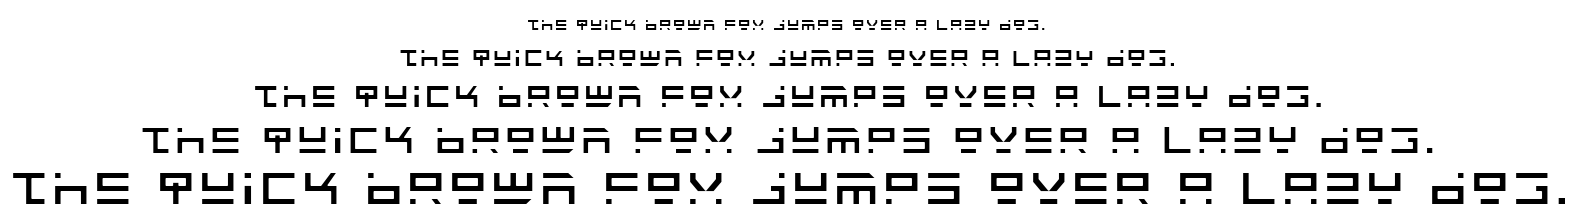 Rocket Type font